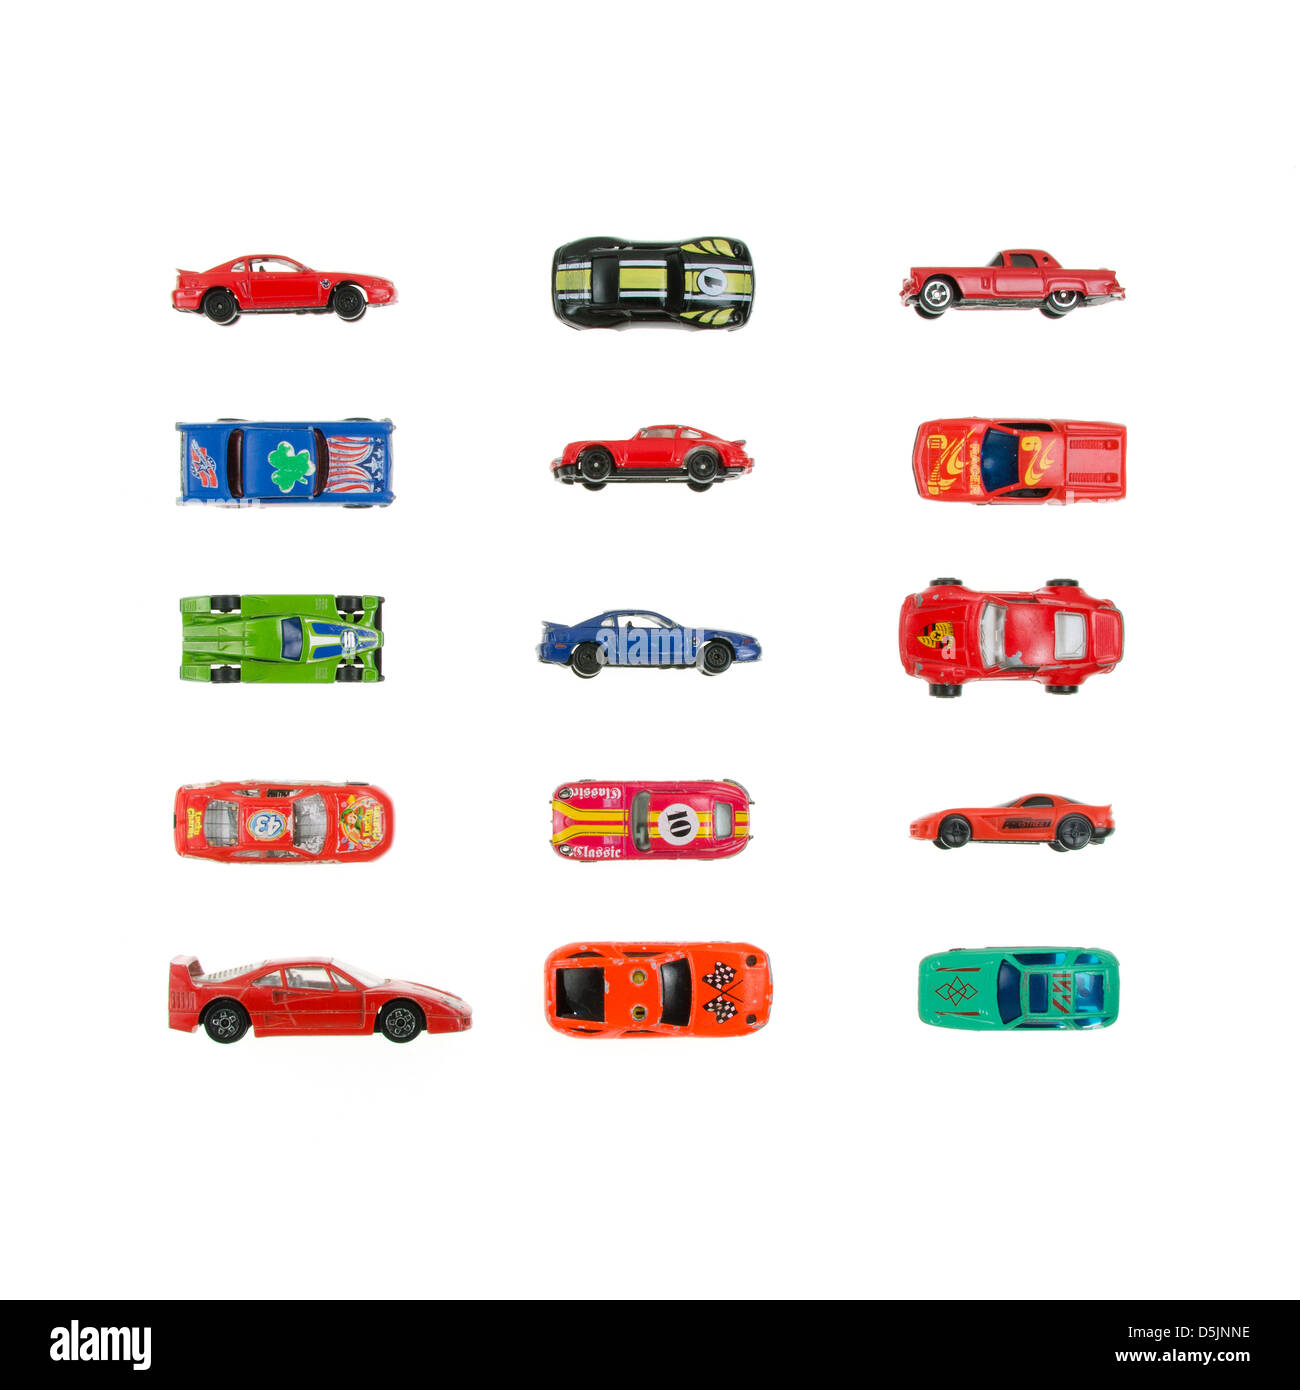 Spielzeug-Rennwagen in einem Raster auf einem weißen Hintergrund angeordnet. Stockfoto